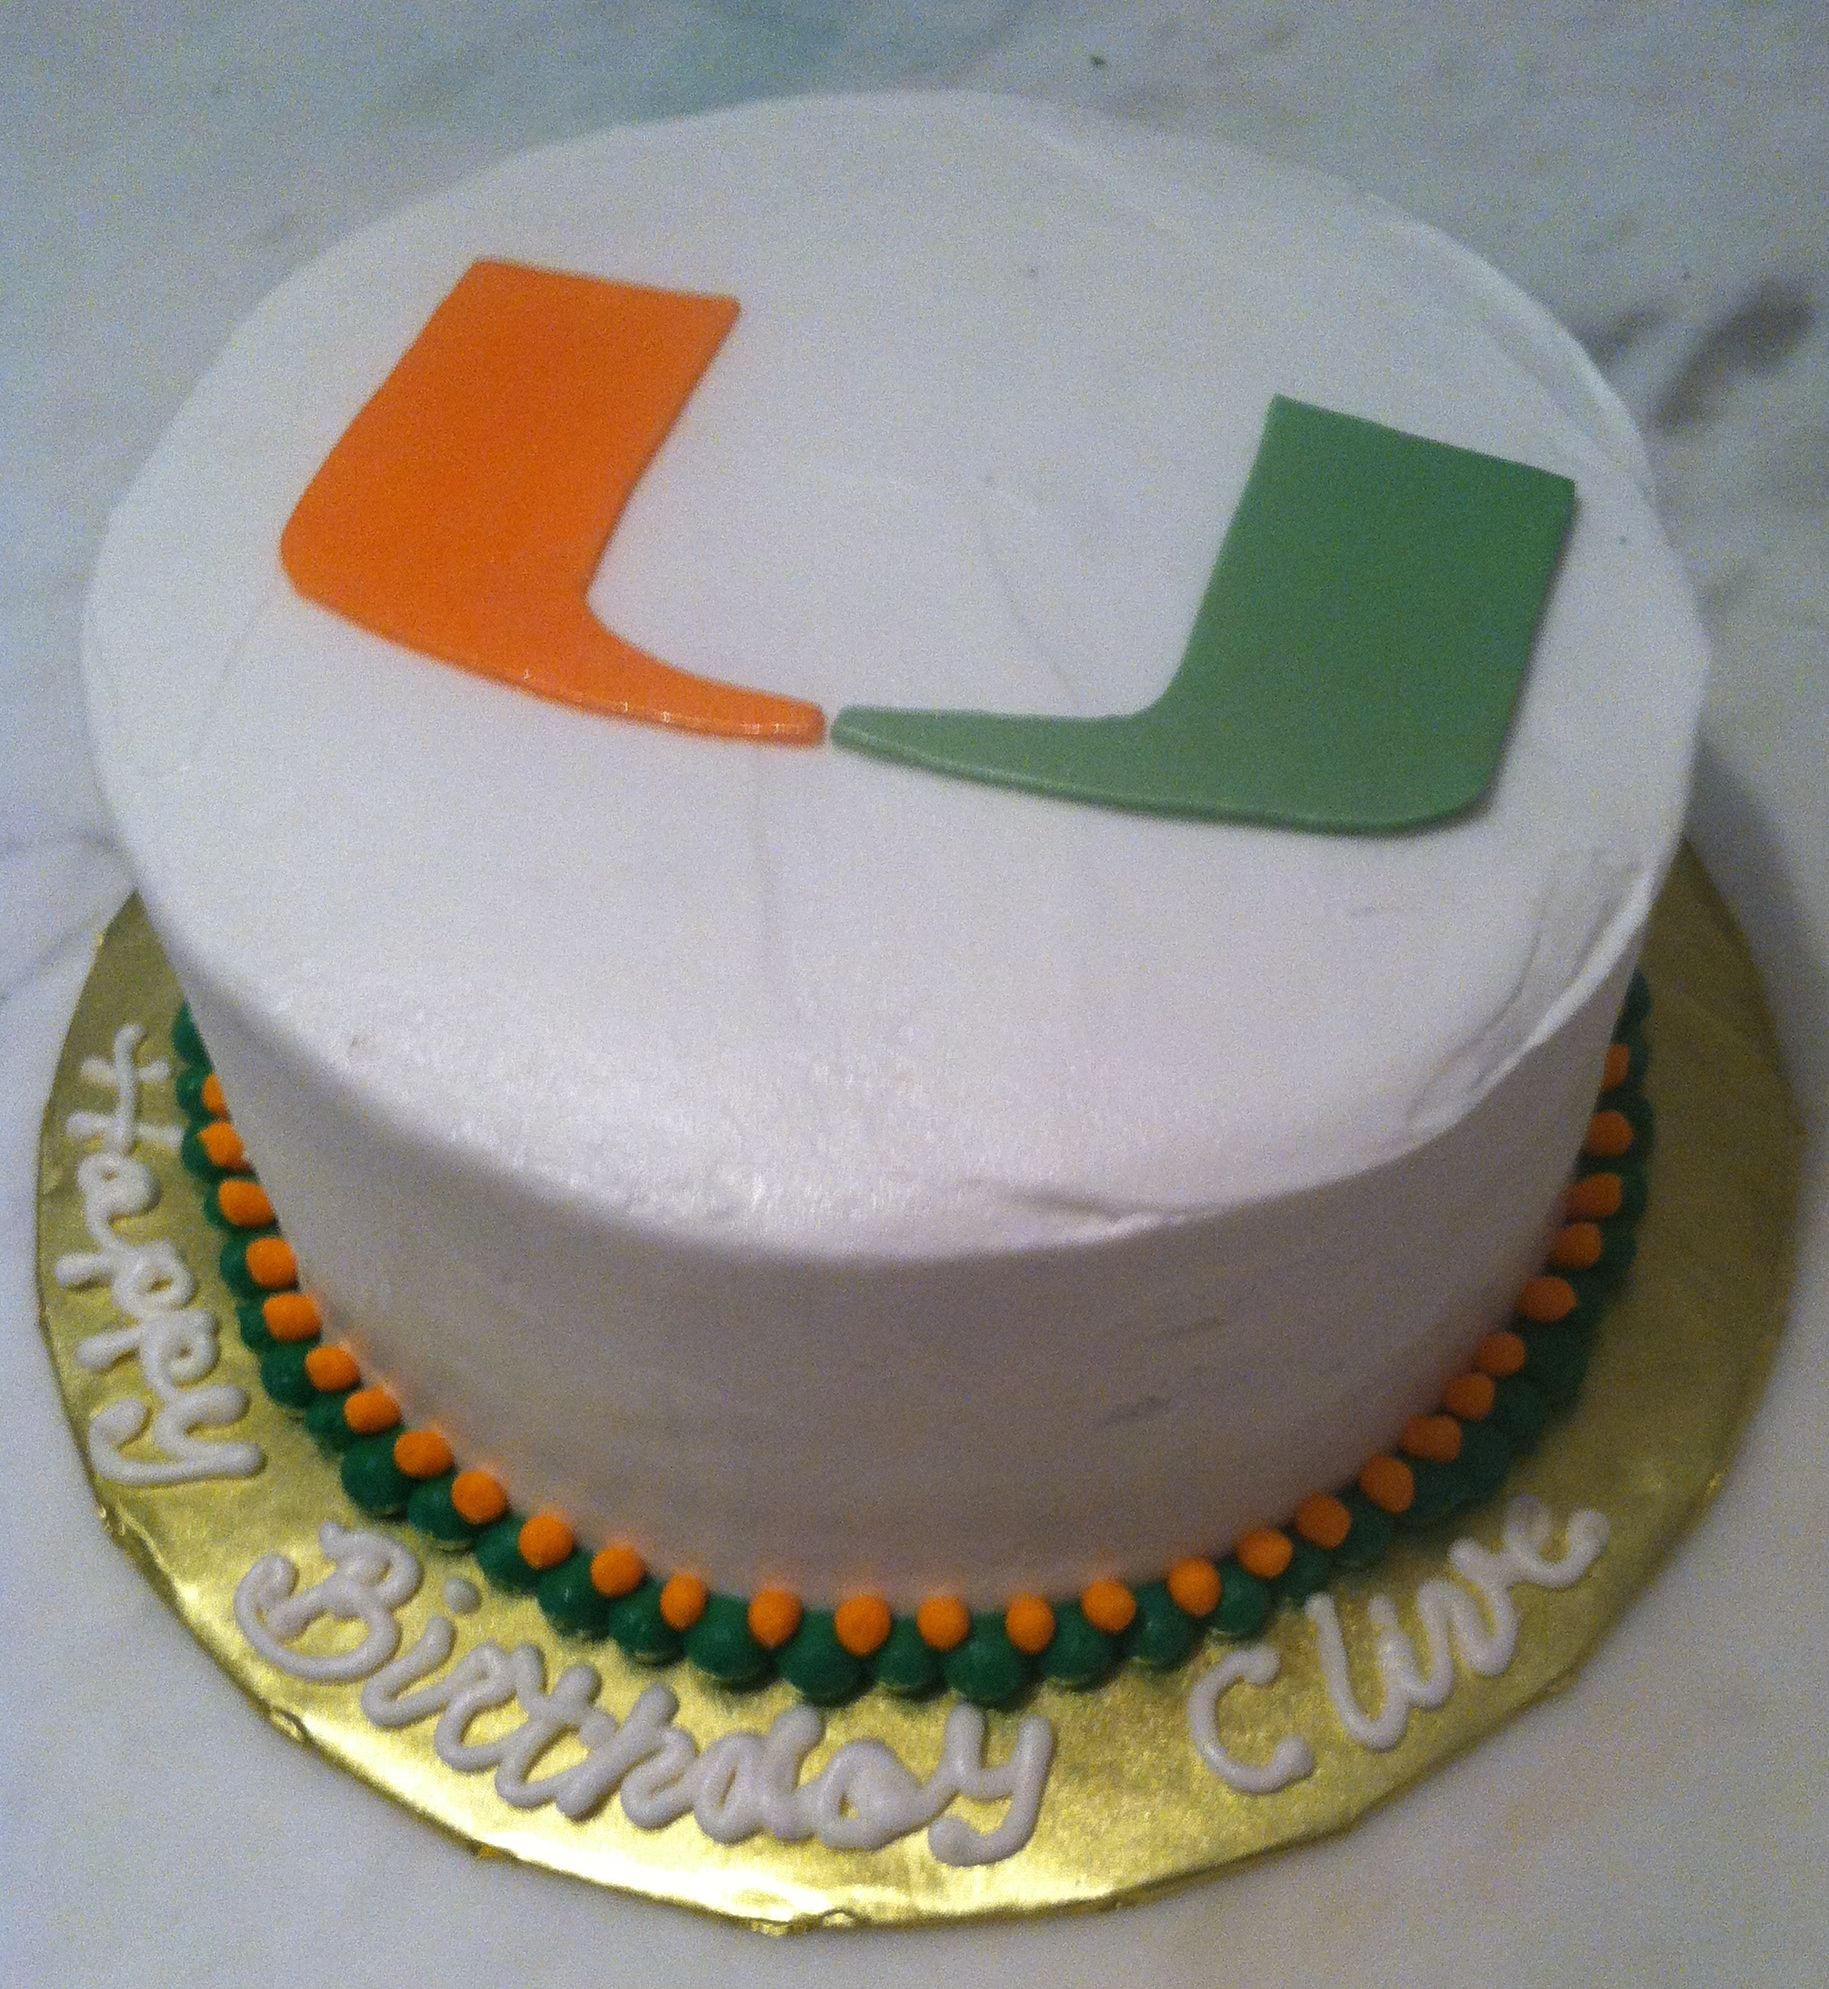 Birthday Cakes Miami
 University of Miami Birthday Cake in 2019